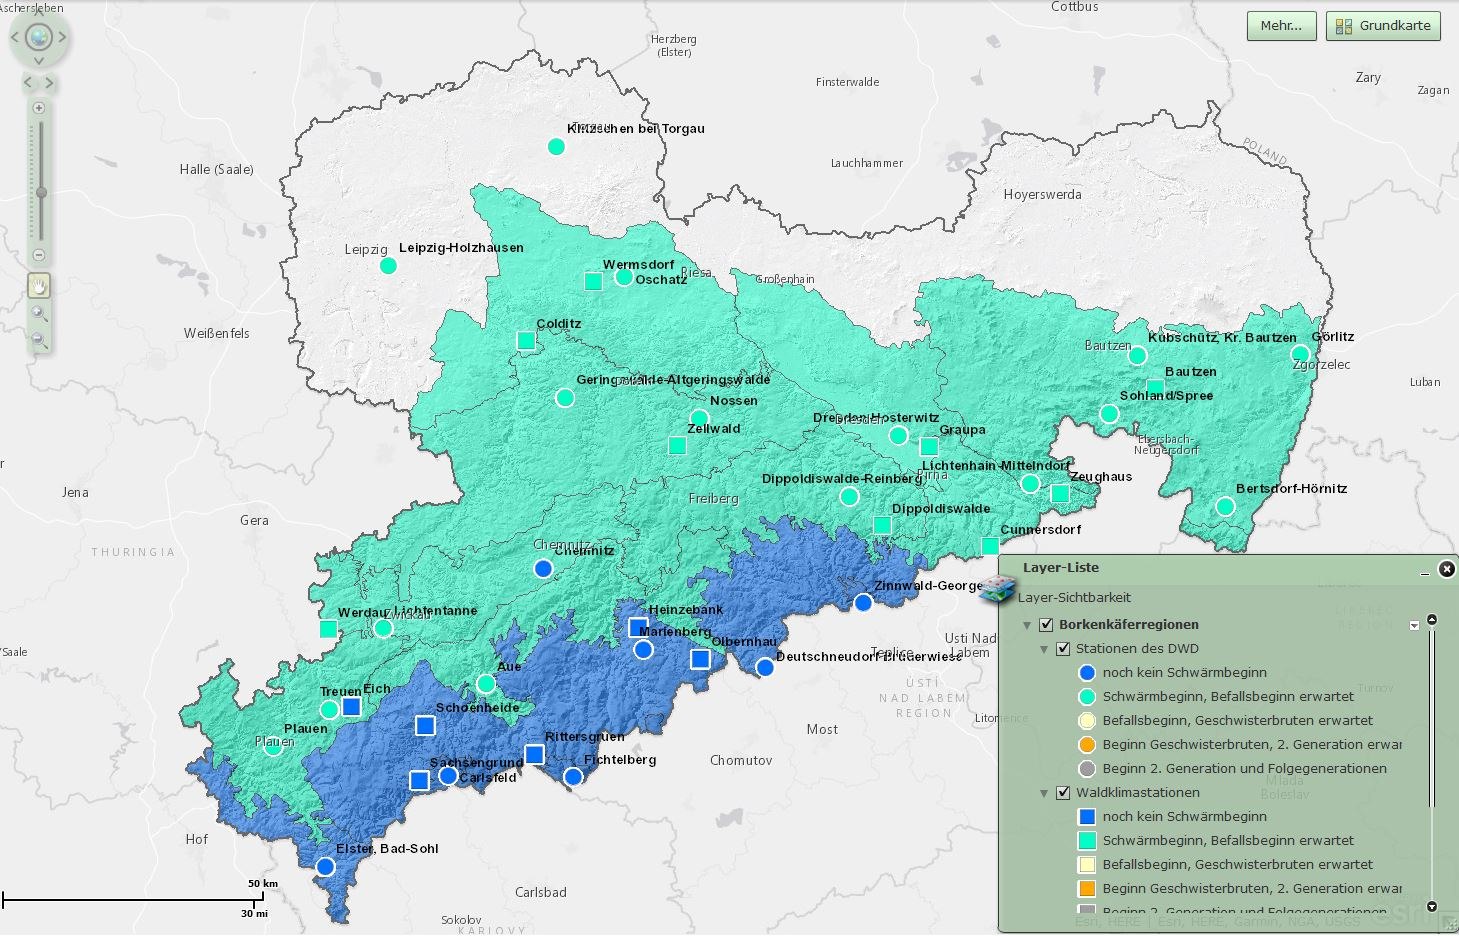 Abbildung 2 zeigt die regionalisierte, für den 15.04.19 prognostizierte Entwicklungsphasen des Buchdruckers in Sachsen 